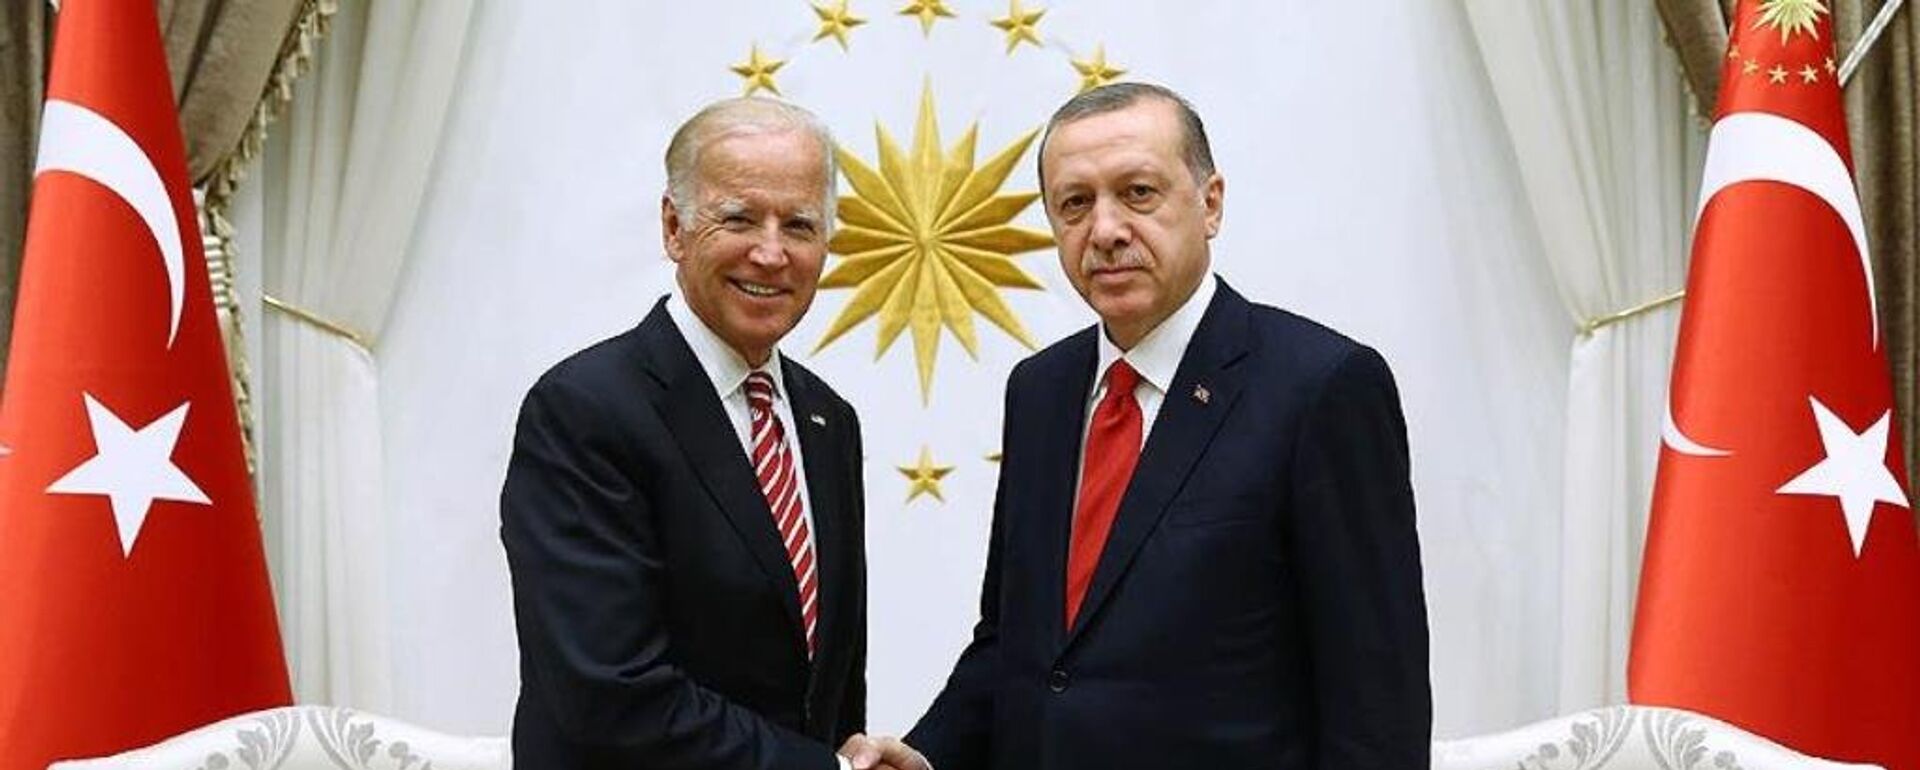 Joe Biden ve Recep Tayyip Erdoğan - Sputnik Türkiye, 1920, 28.09.2021